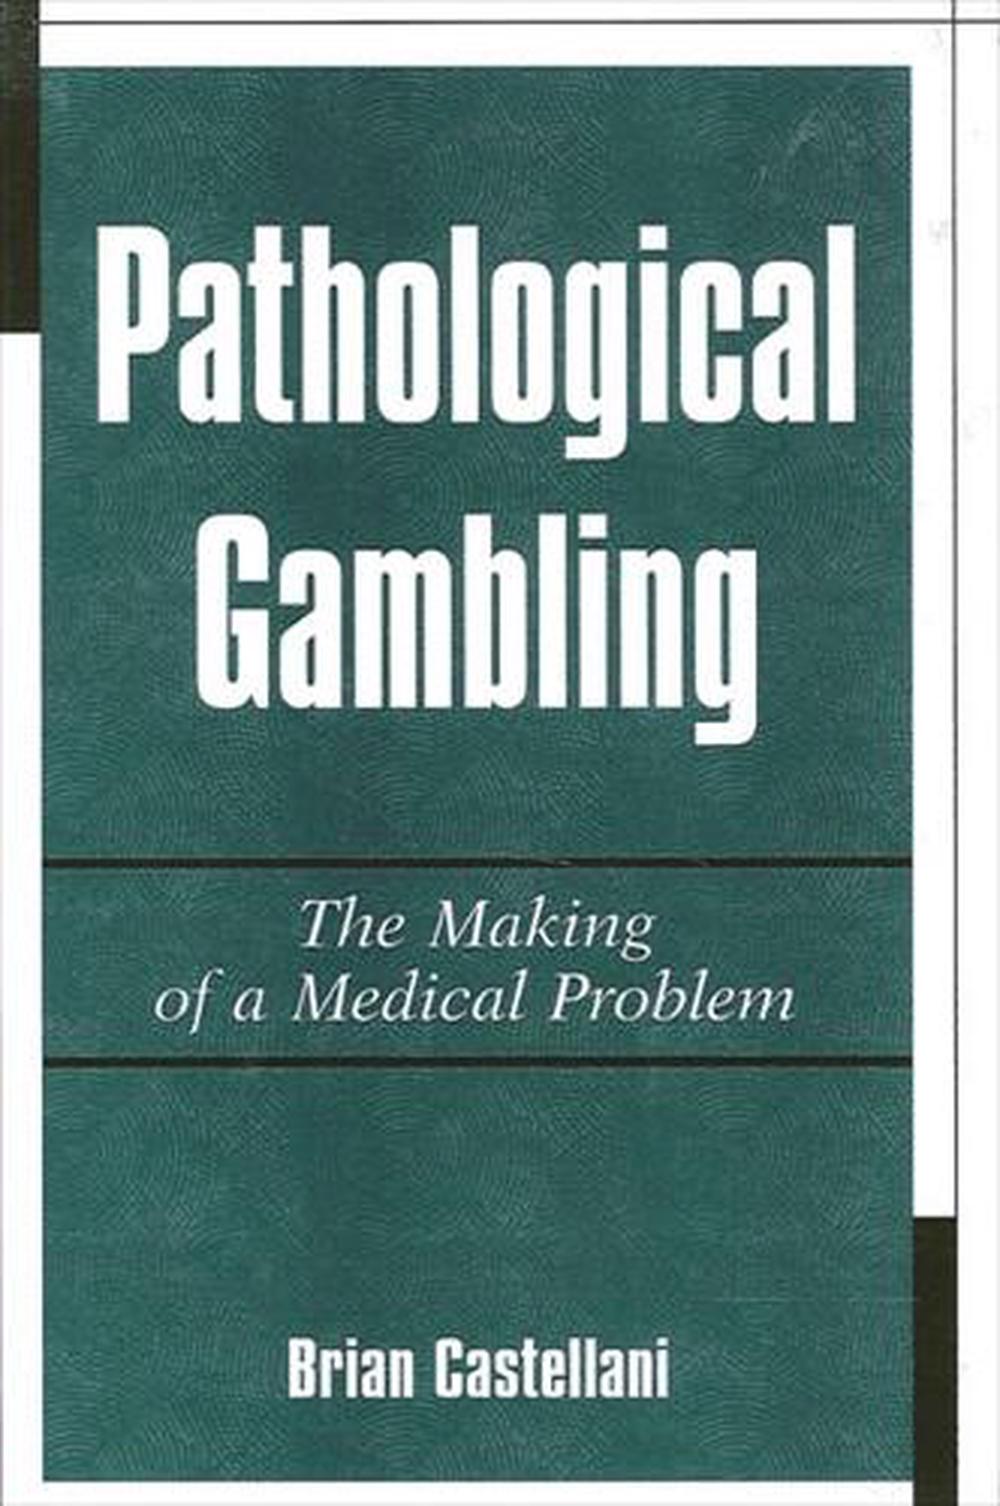 dsm pathological gambling